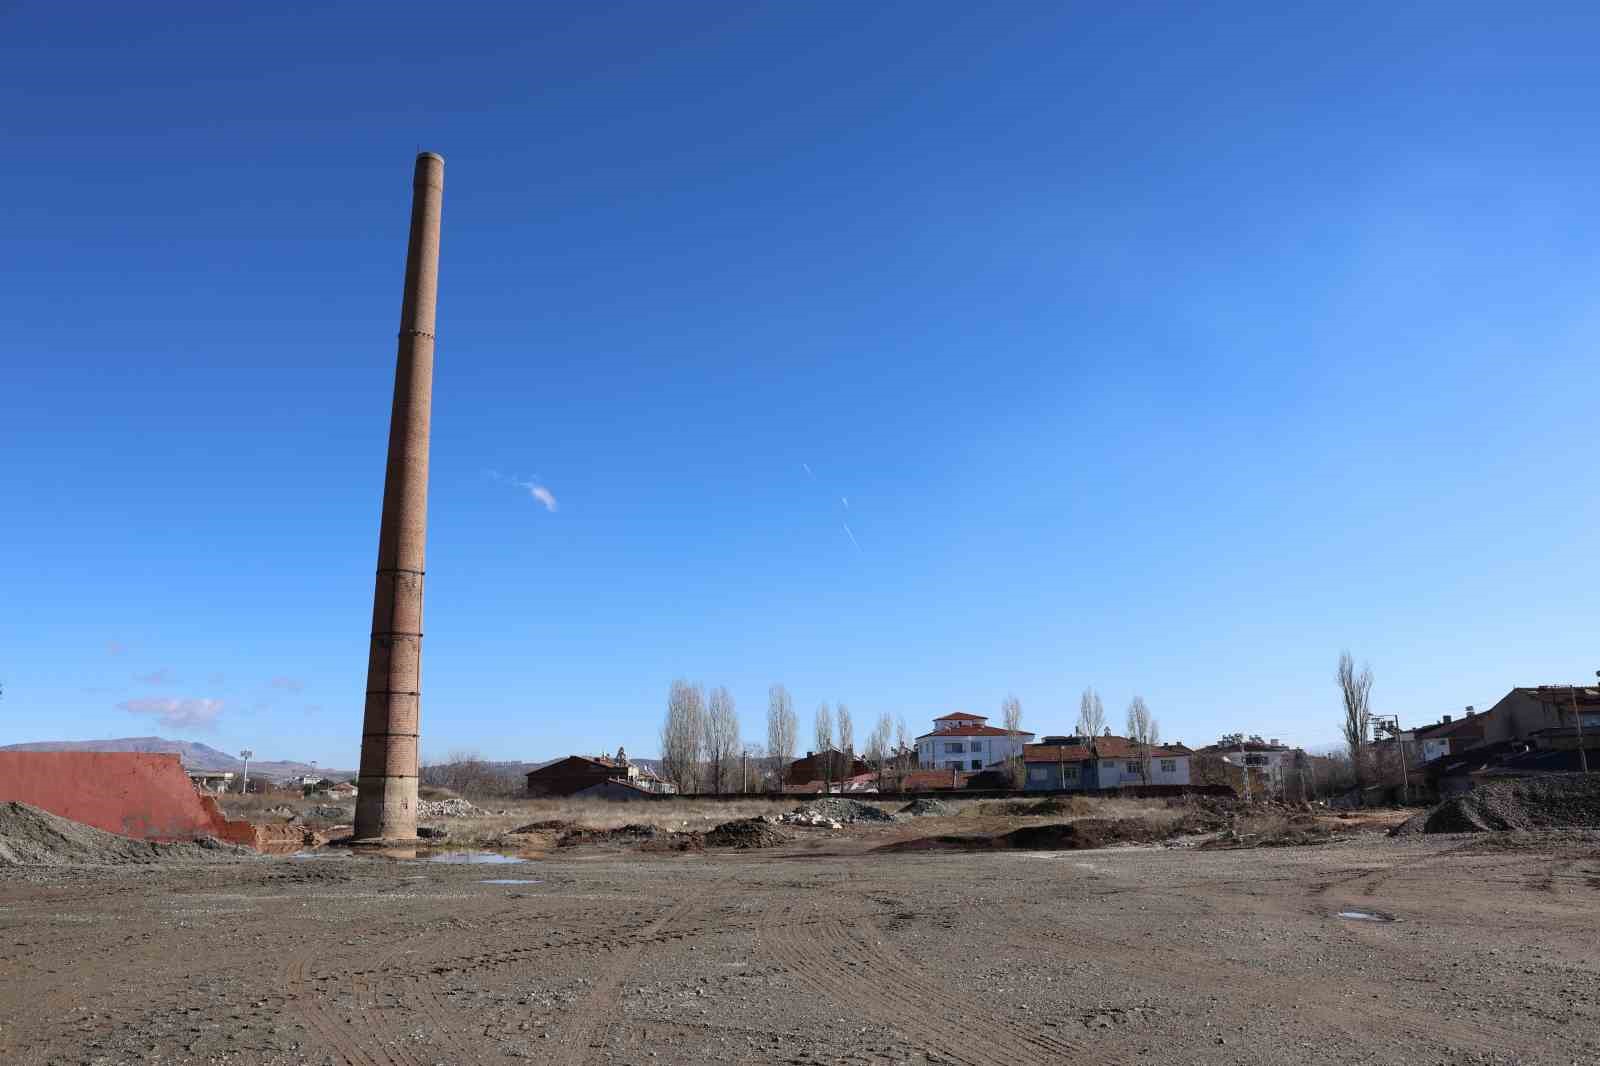 fabrikası olmayan 40 metrelik baca, 6 büyük depreme rağmen 72 yıldır ayakta duruyor